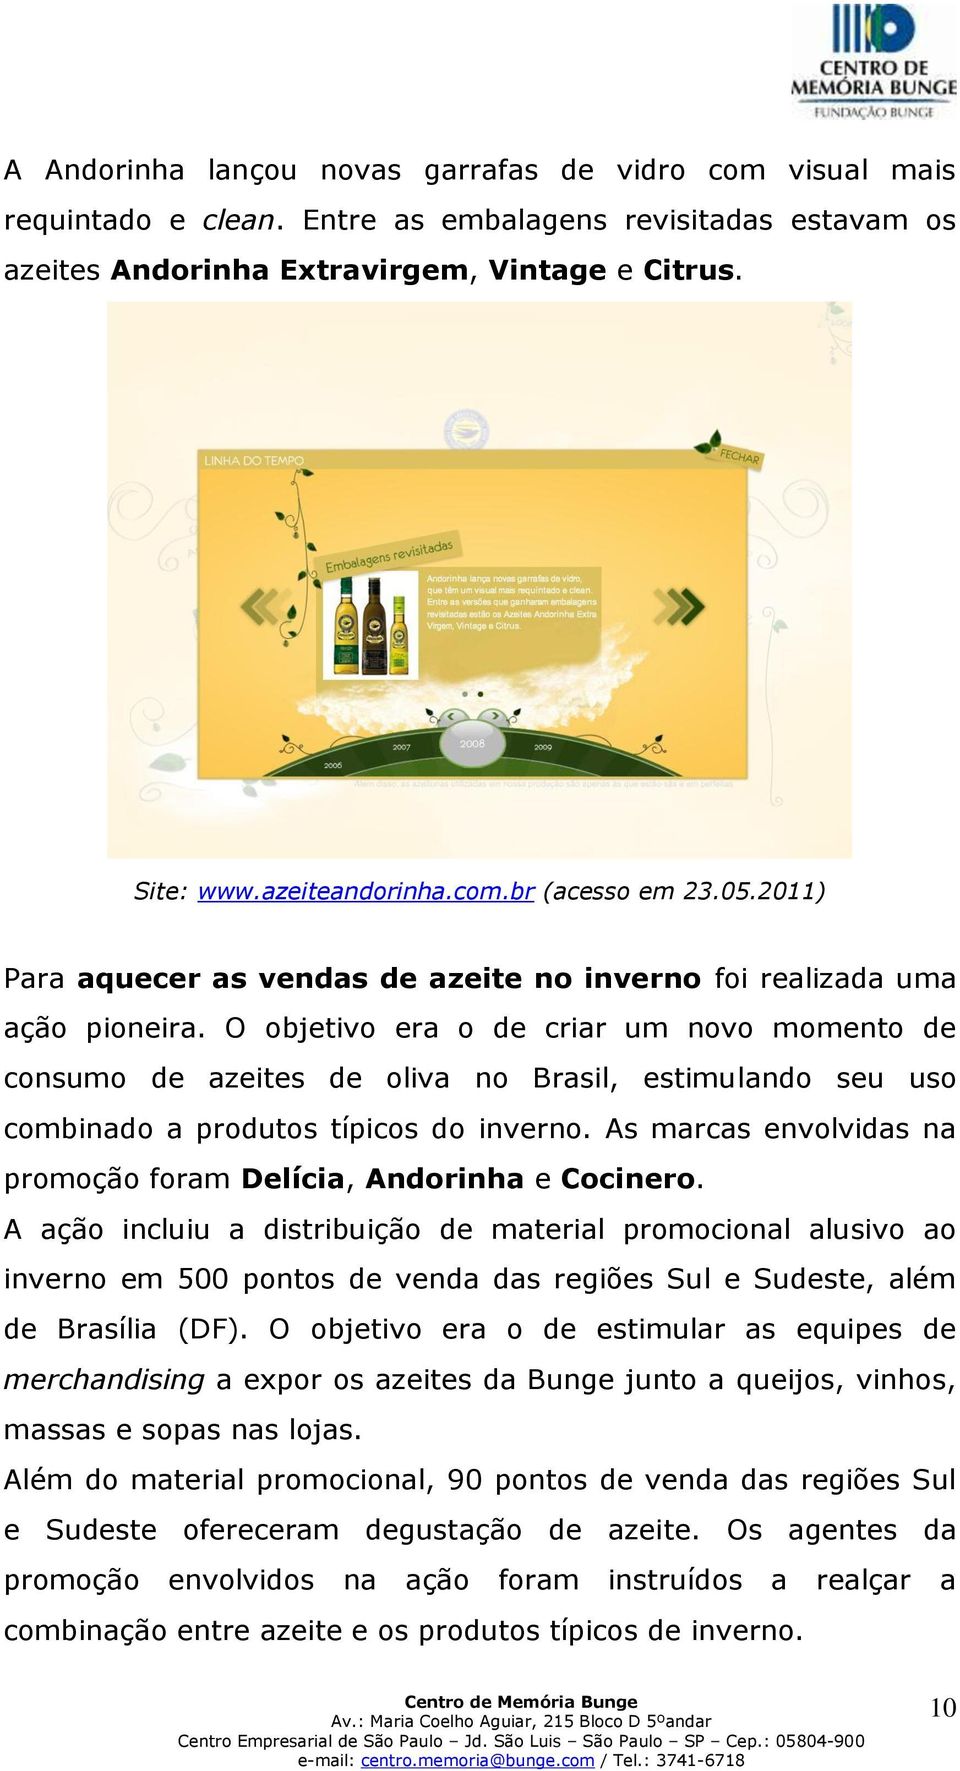 O objetivo era o de criar um novo momento de consumo de azeites de oliva no Brasil, estimulando seu uso combinado a produtos típicos do inverno.